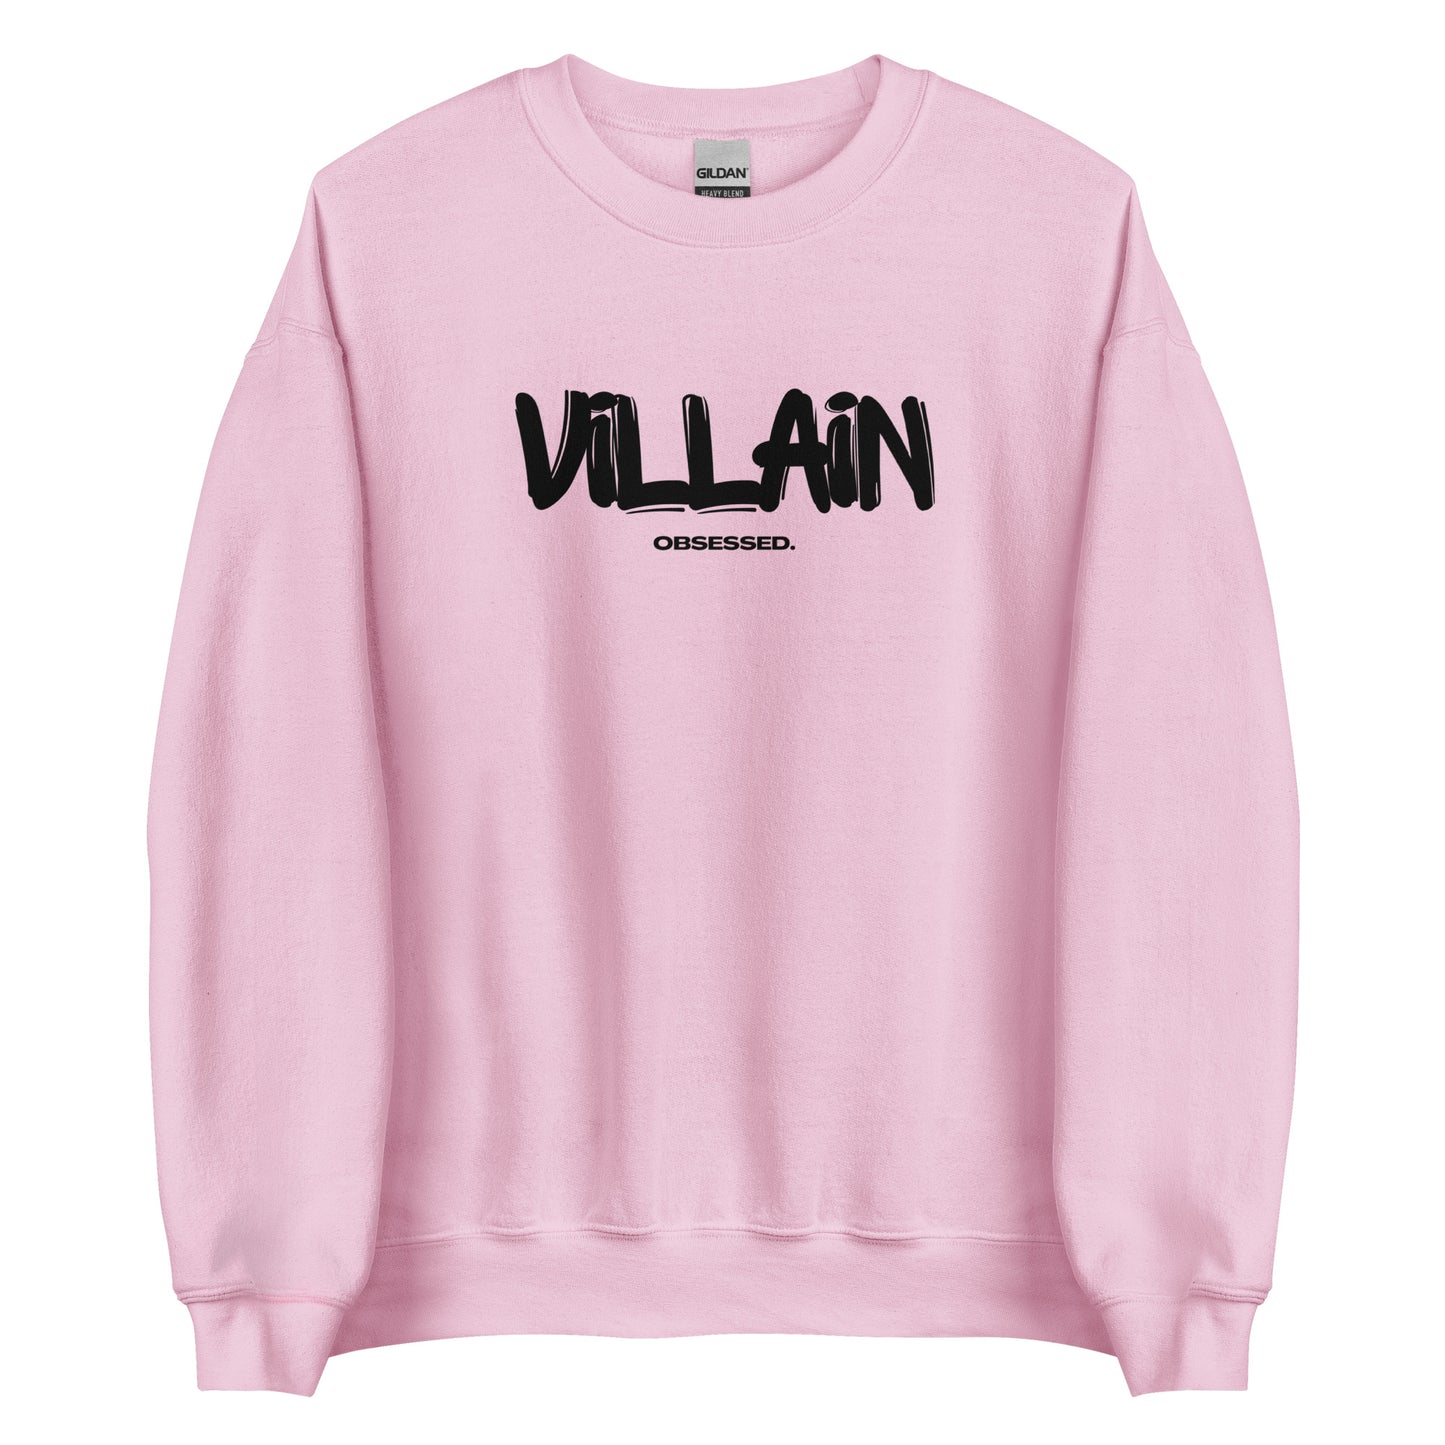 villain obsessed sweatshirt